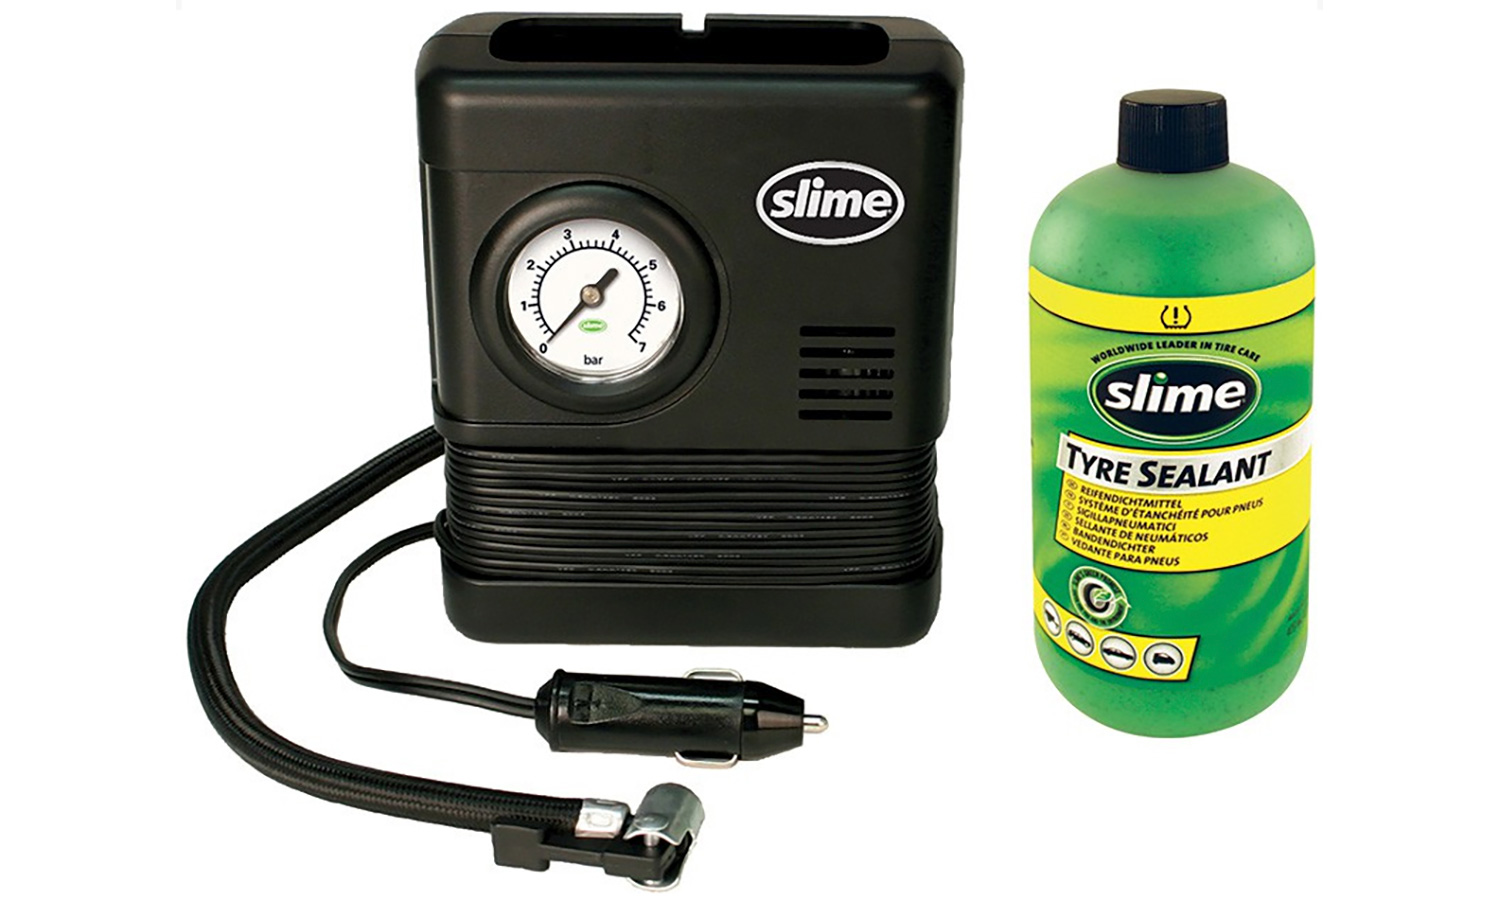 Фотографія Ремкомплект для покришок Smart Spair (герметик + повітряний компресор), Slime